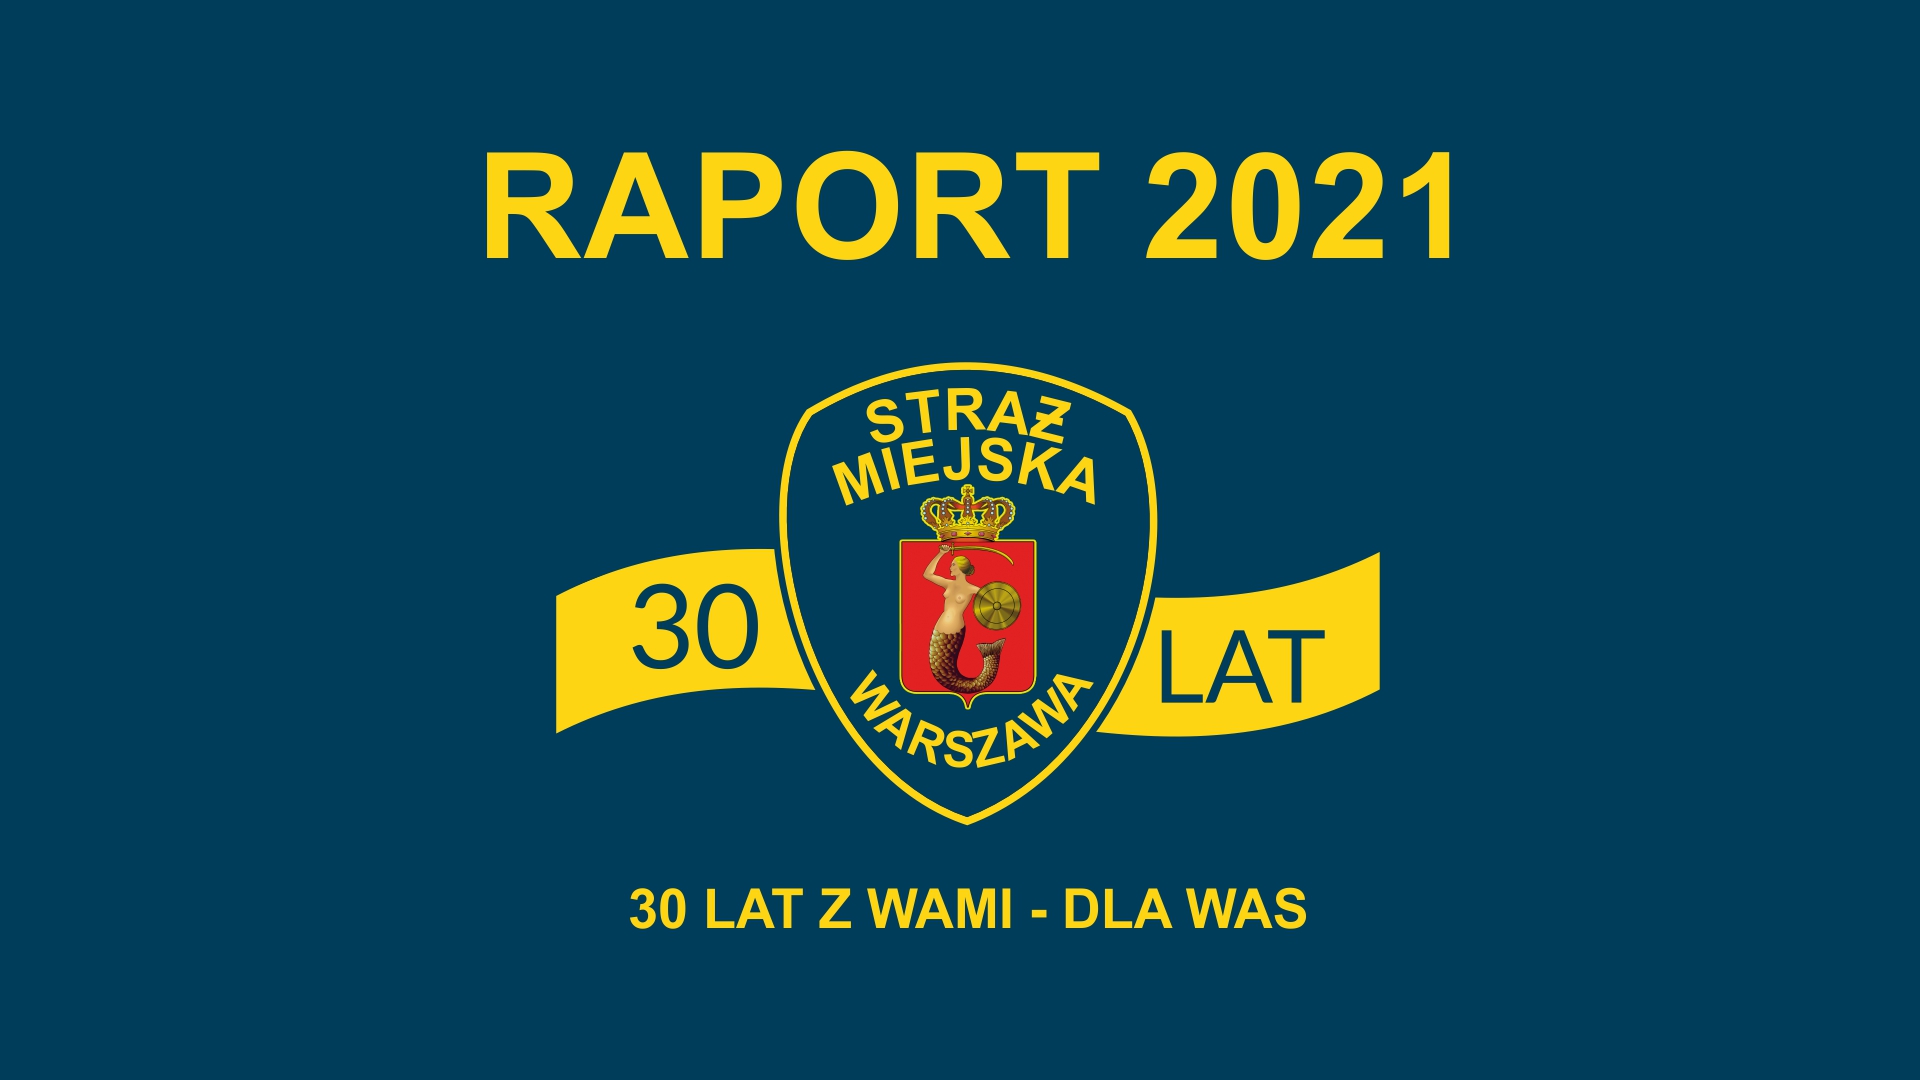 Grafika z napisem "Raport 2021", tarczą straży miejskiej z szarfą z napisem "30 lat" oraz hasłem "30 lat z wami- dla was" poniżej.